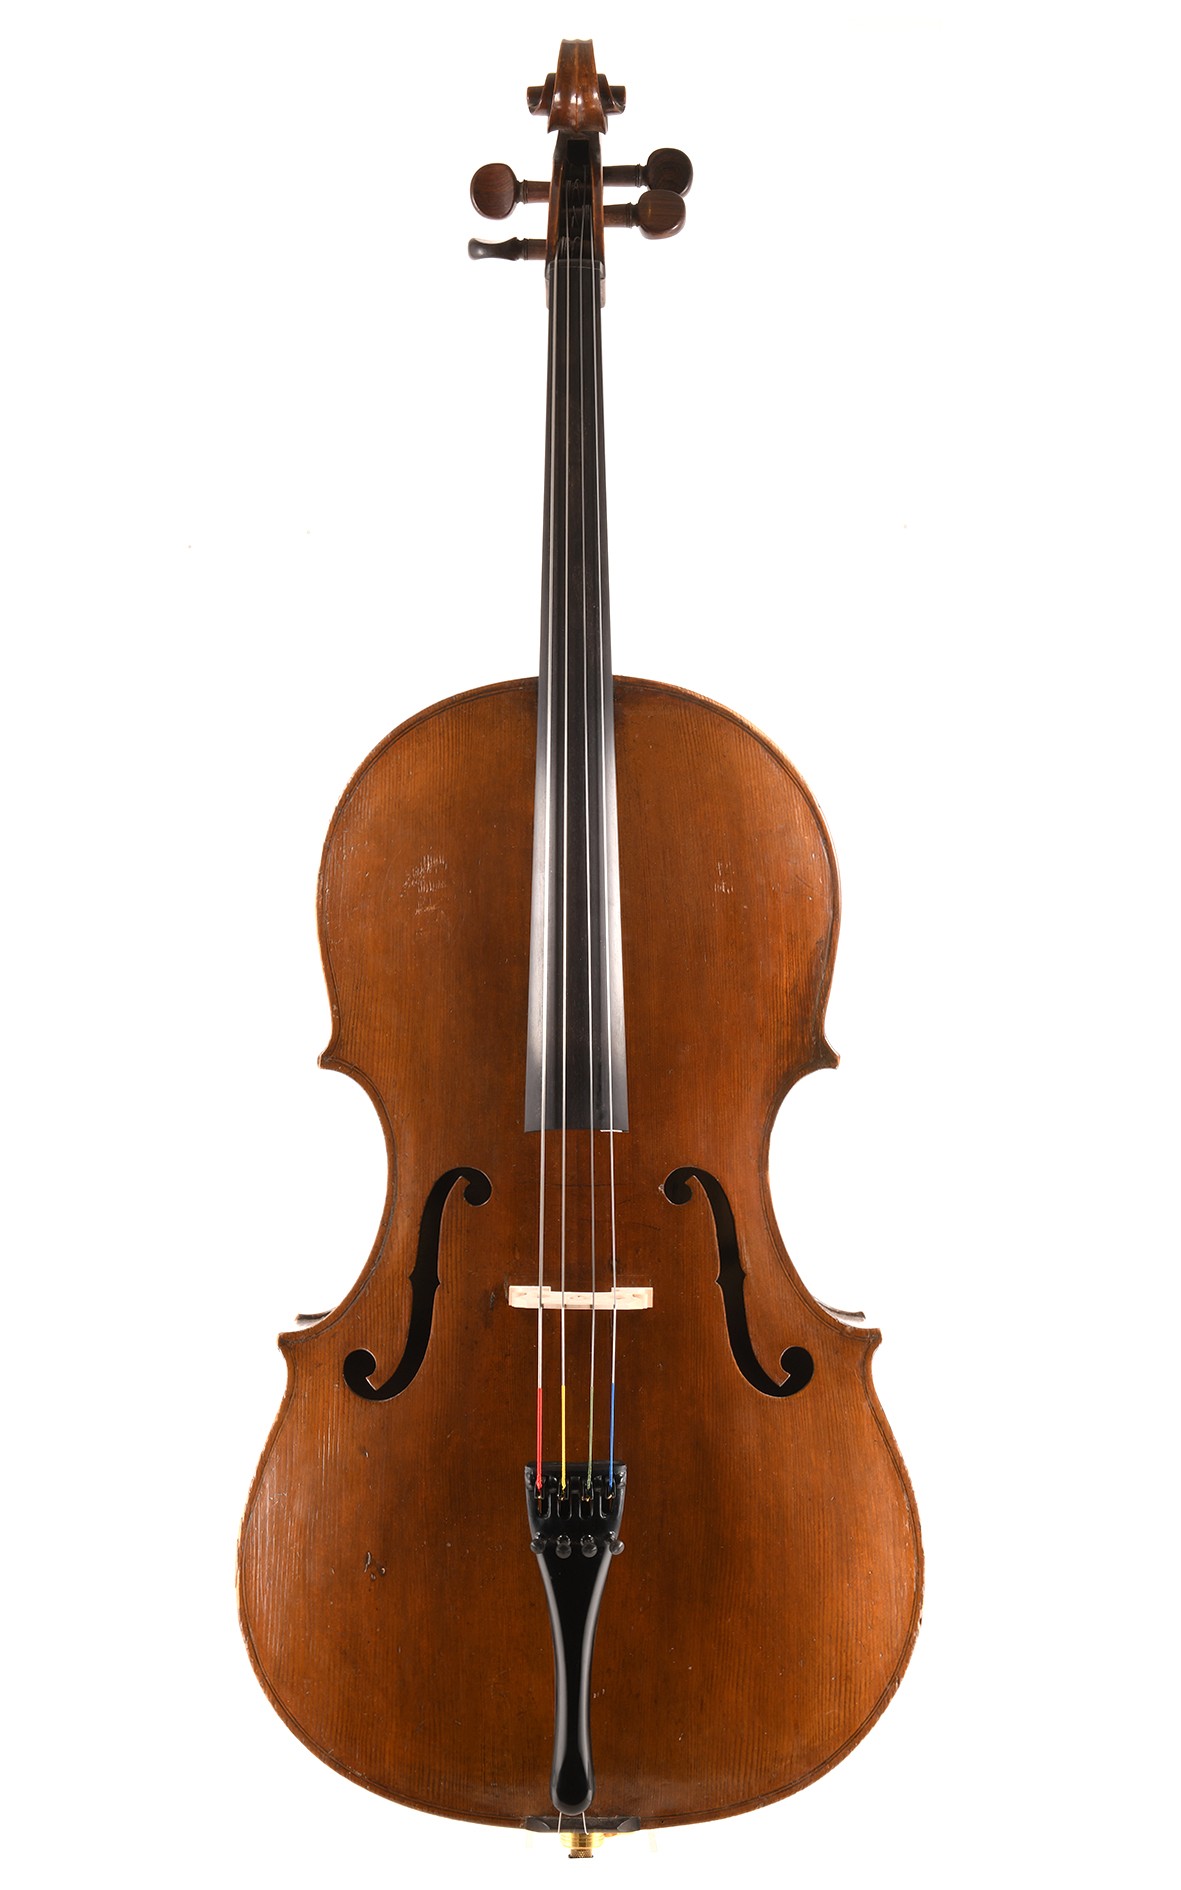 Violoncelle 7/8 ancien, vers 1850